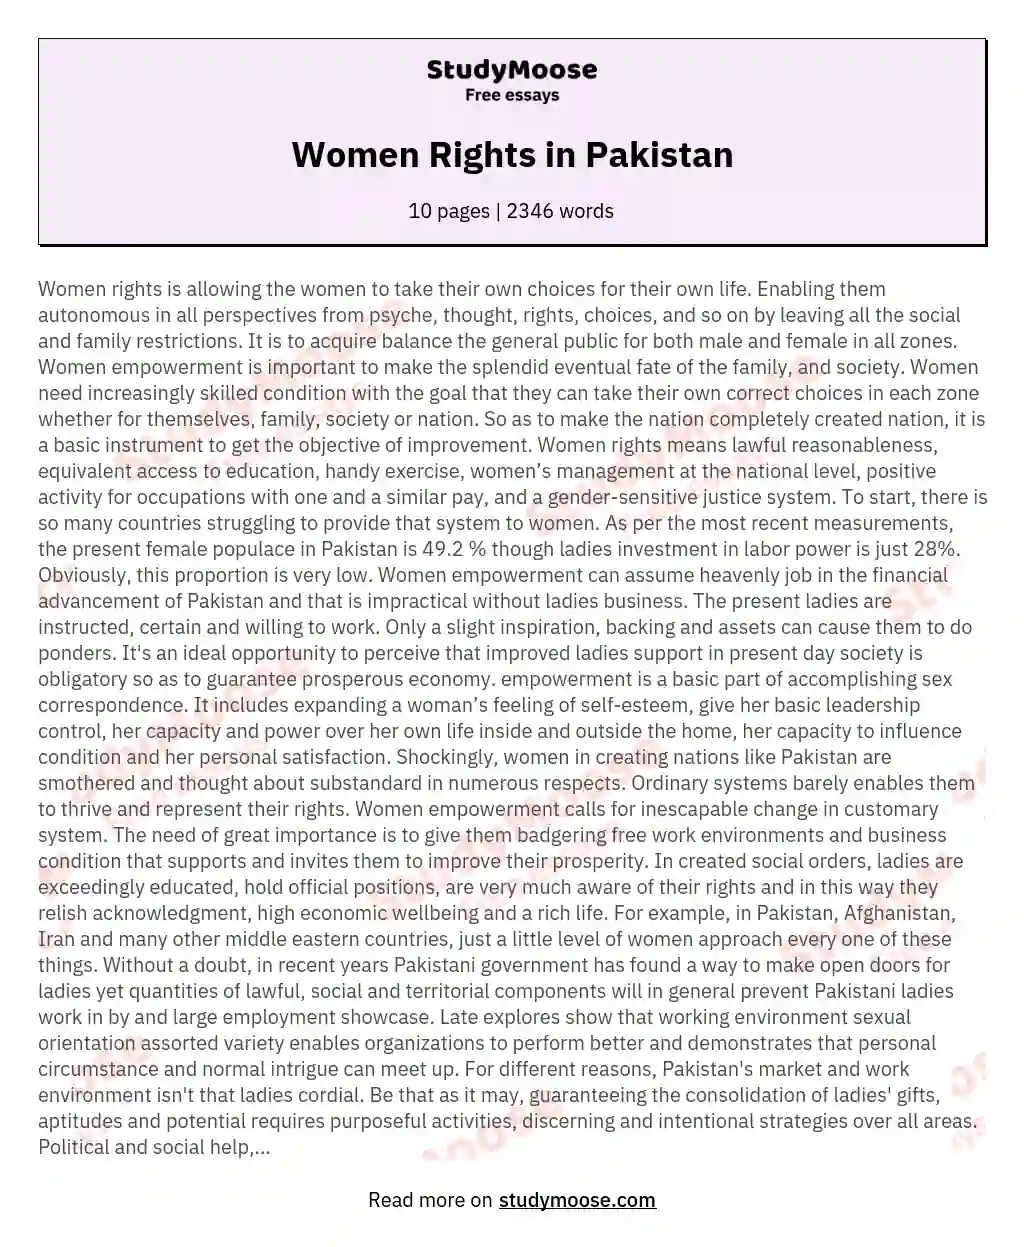 Women Rights in Pakistan essay